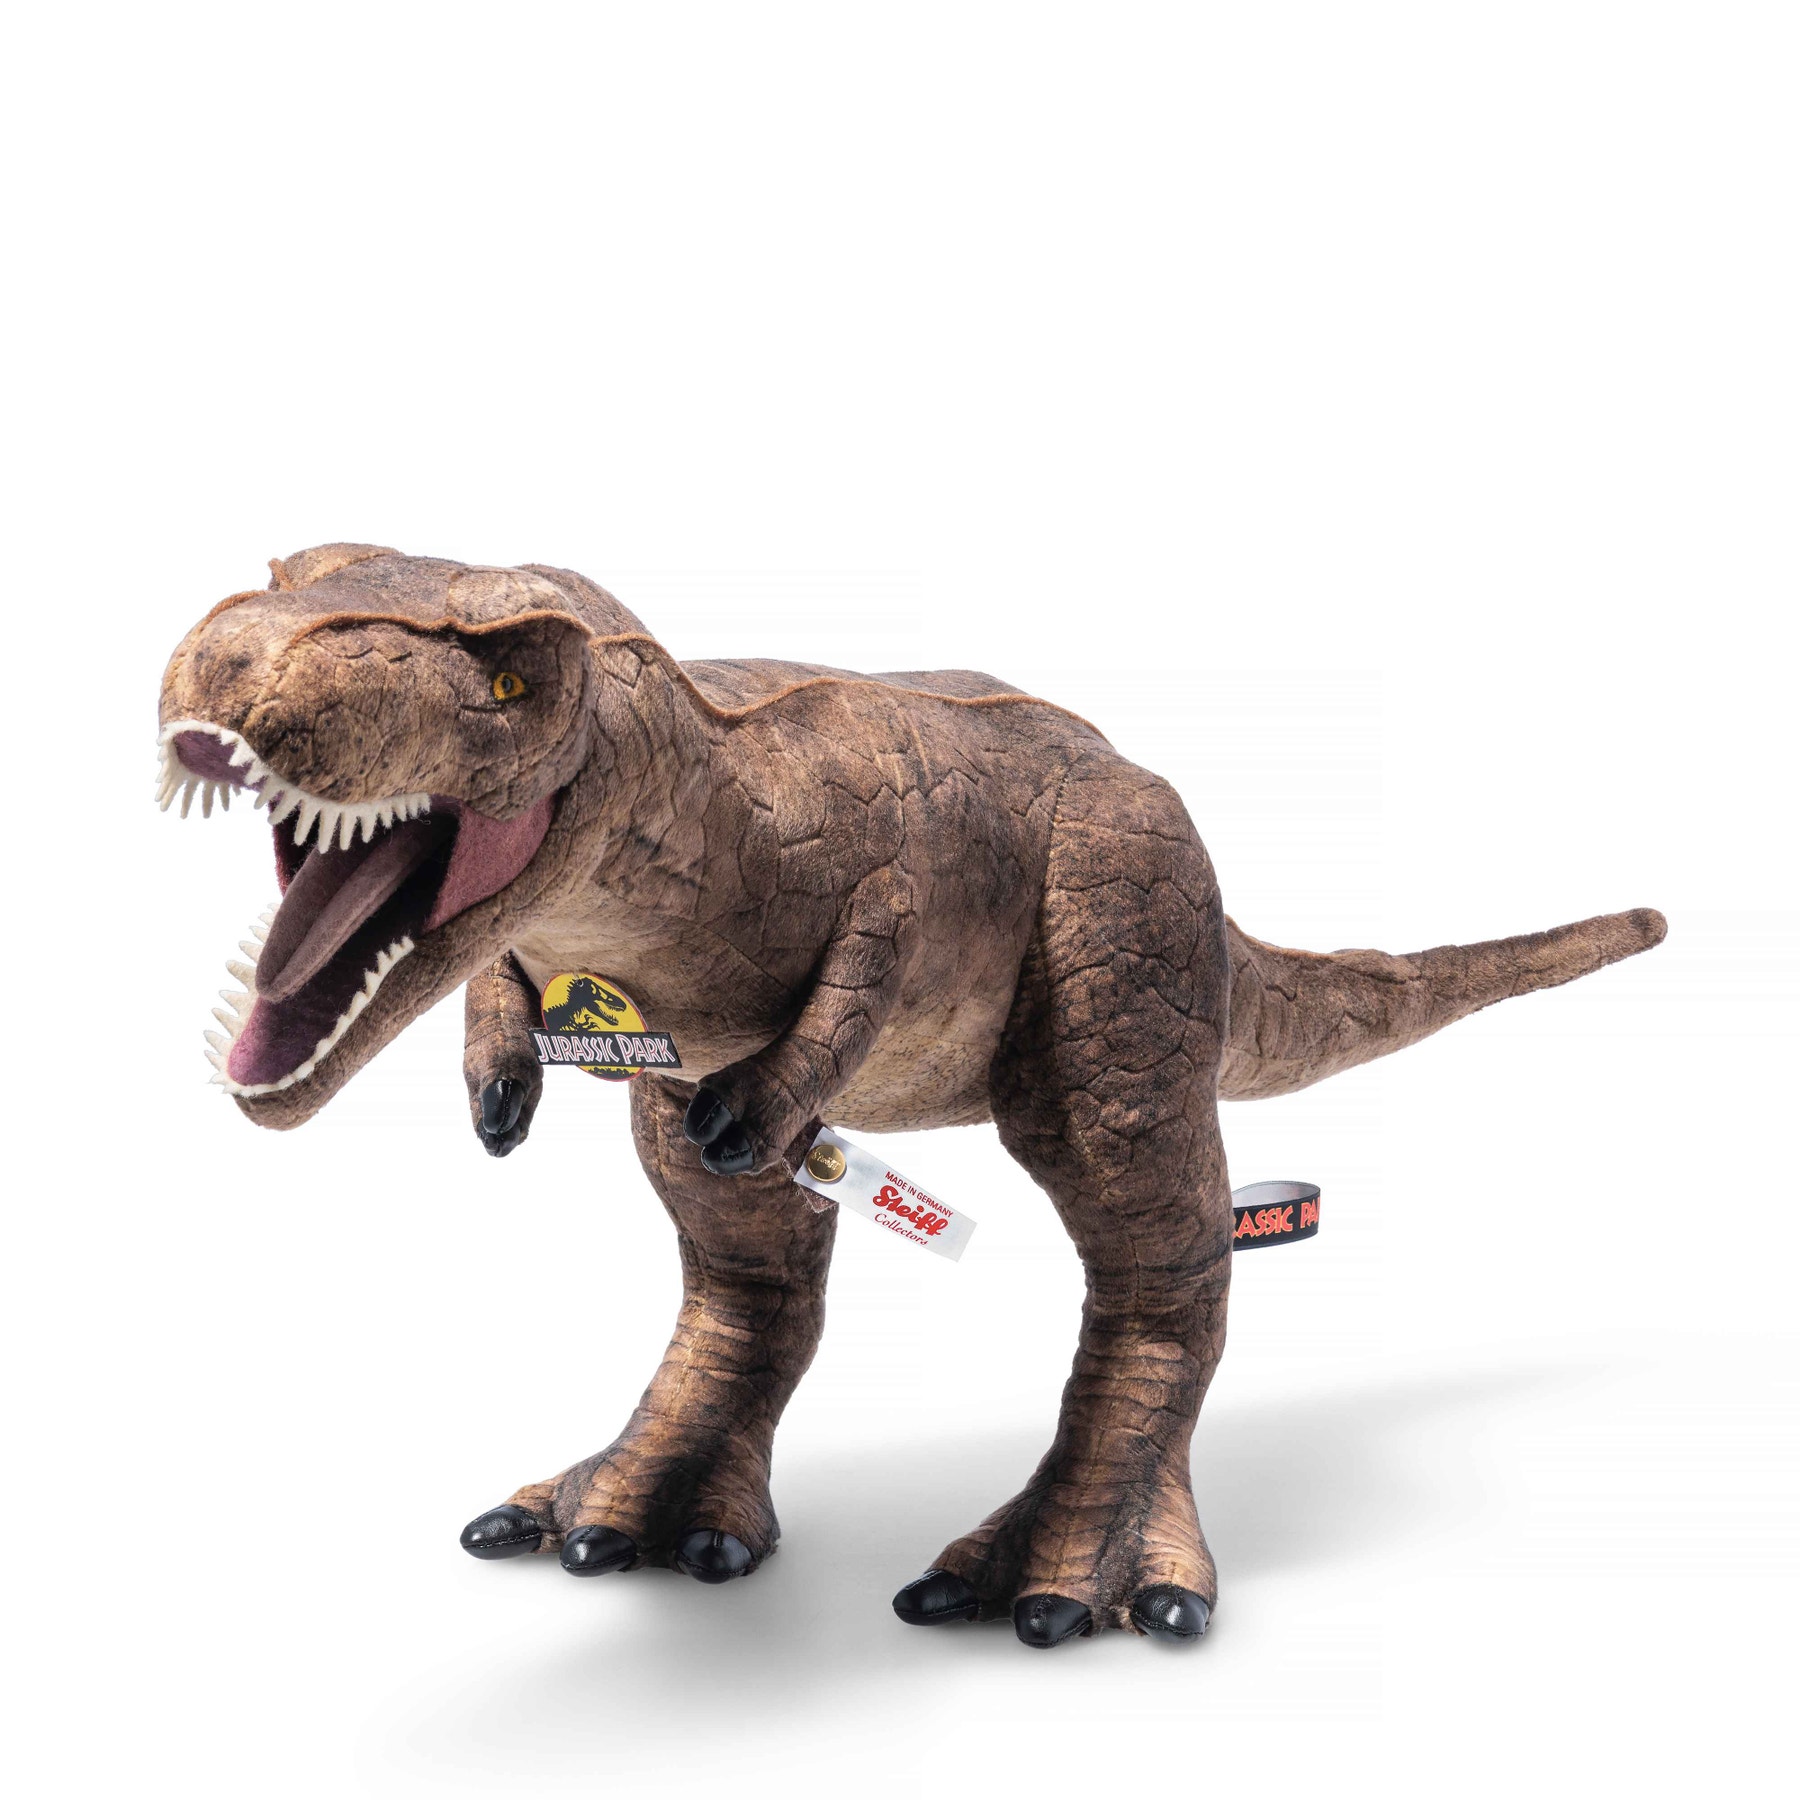 "Jurassic Park" T-Rex Dinosaur Limited Edition